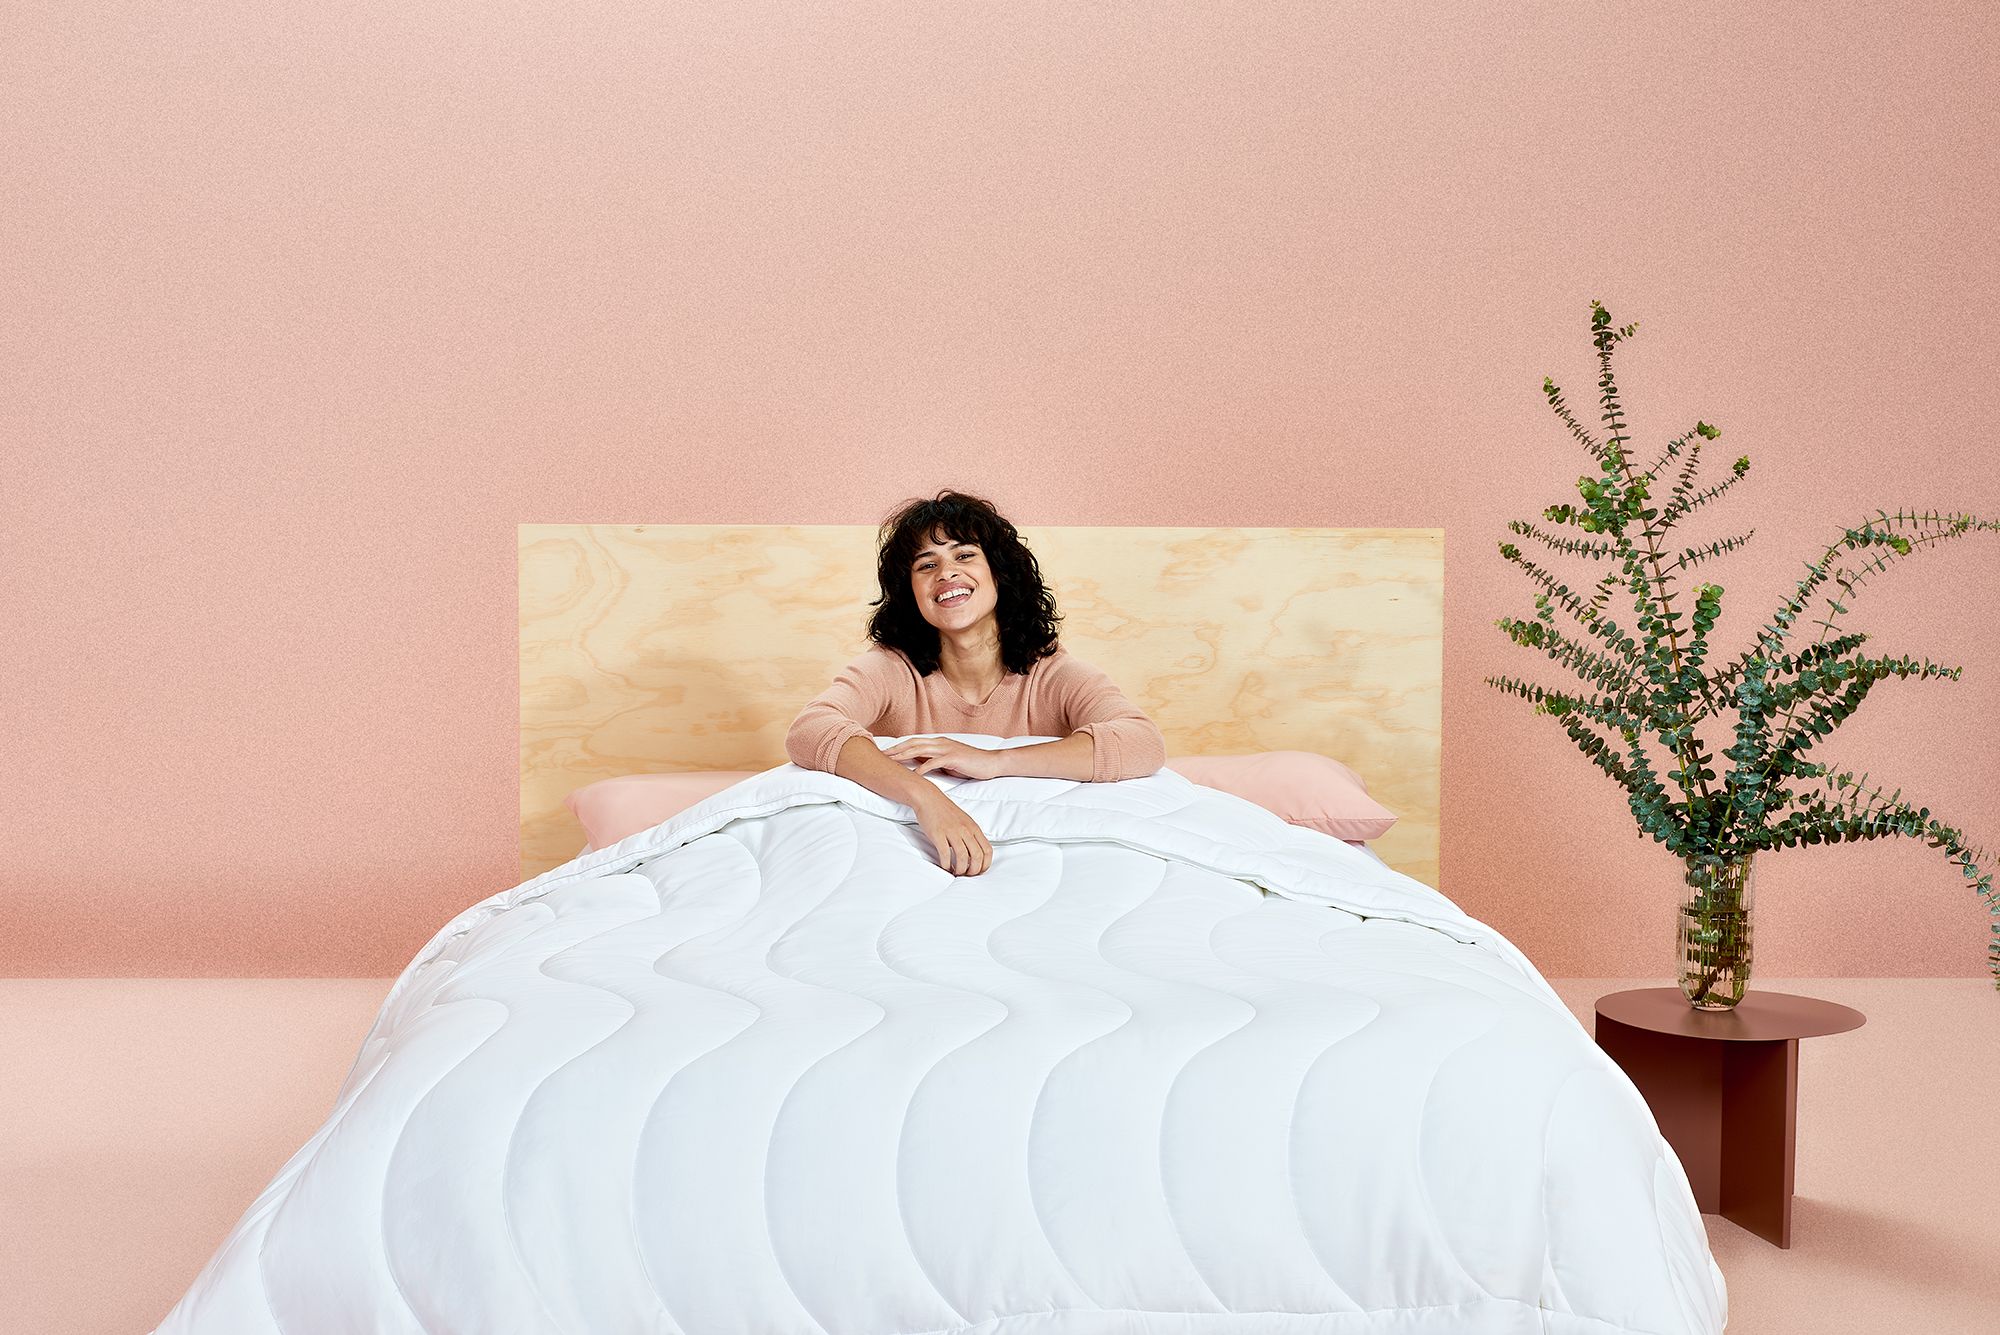 Ta priljubljena blagovna znamka posteljnine je izdala ohlajevalnik Eucalyptus, ki vam bo pomagal bolje spati